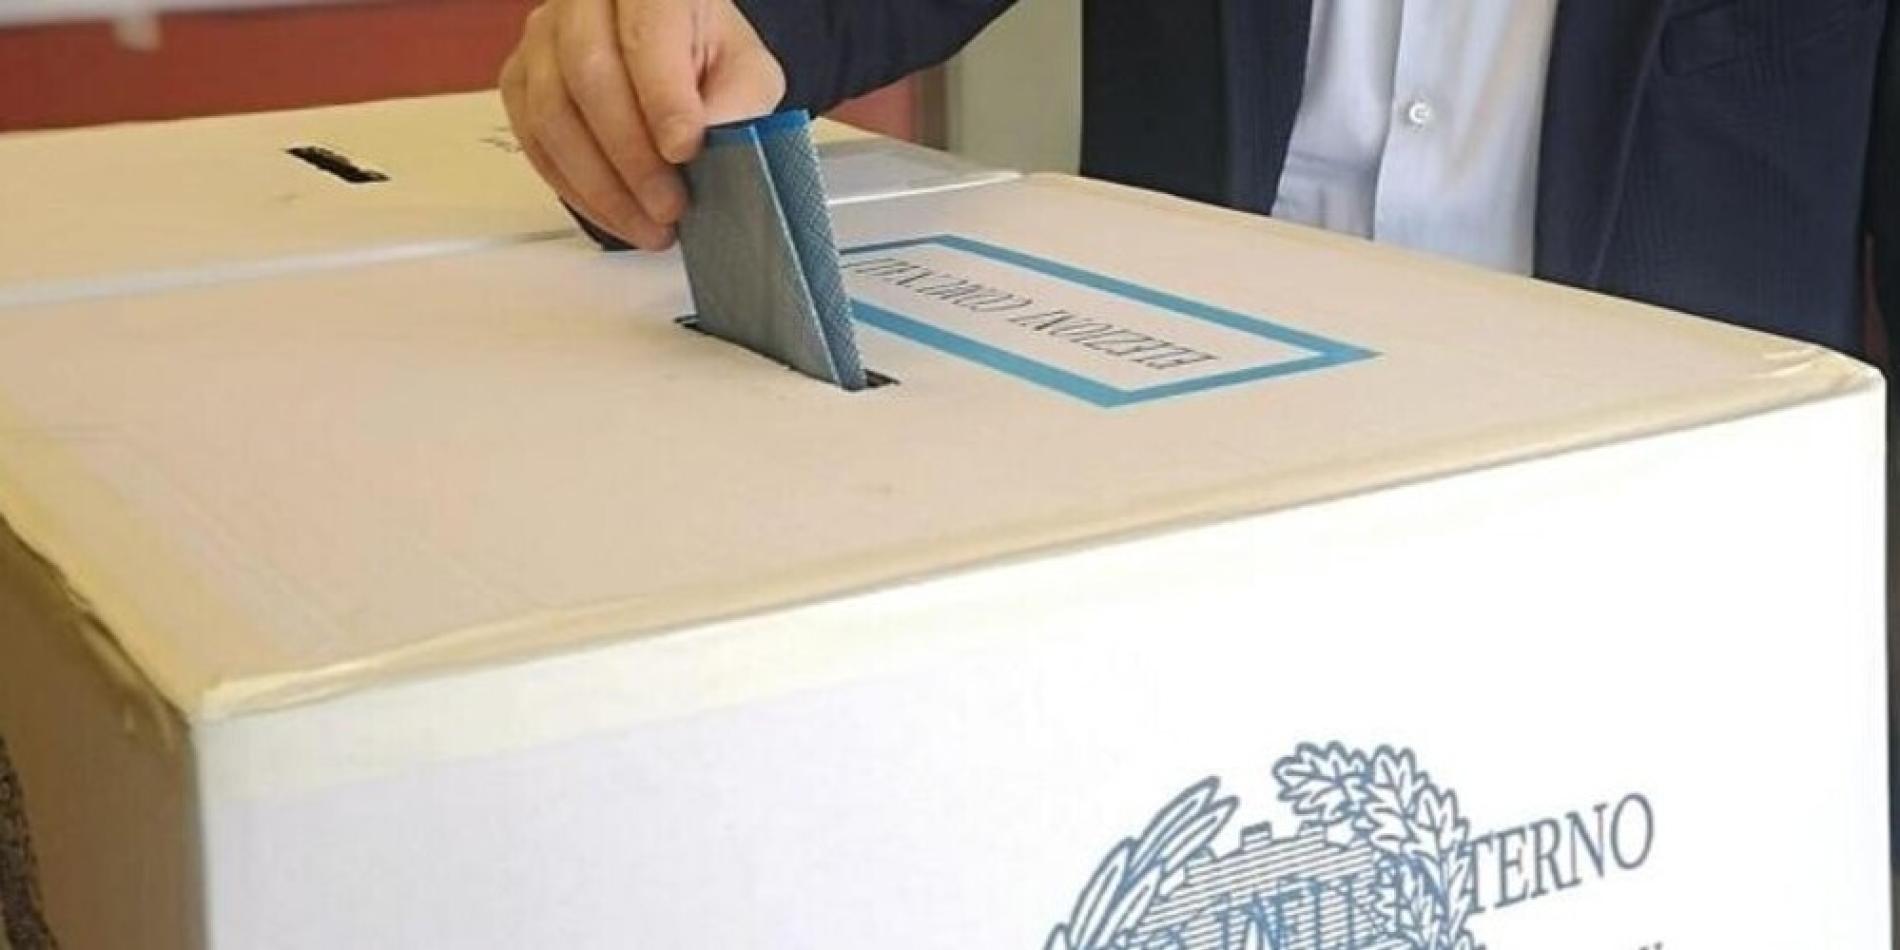 Novi, il caso del finto sondaggio elettorale agita i candidati